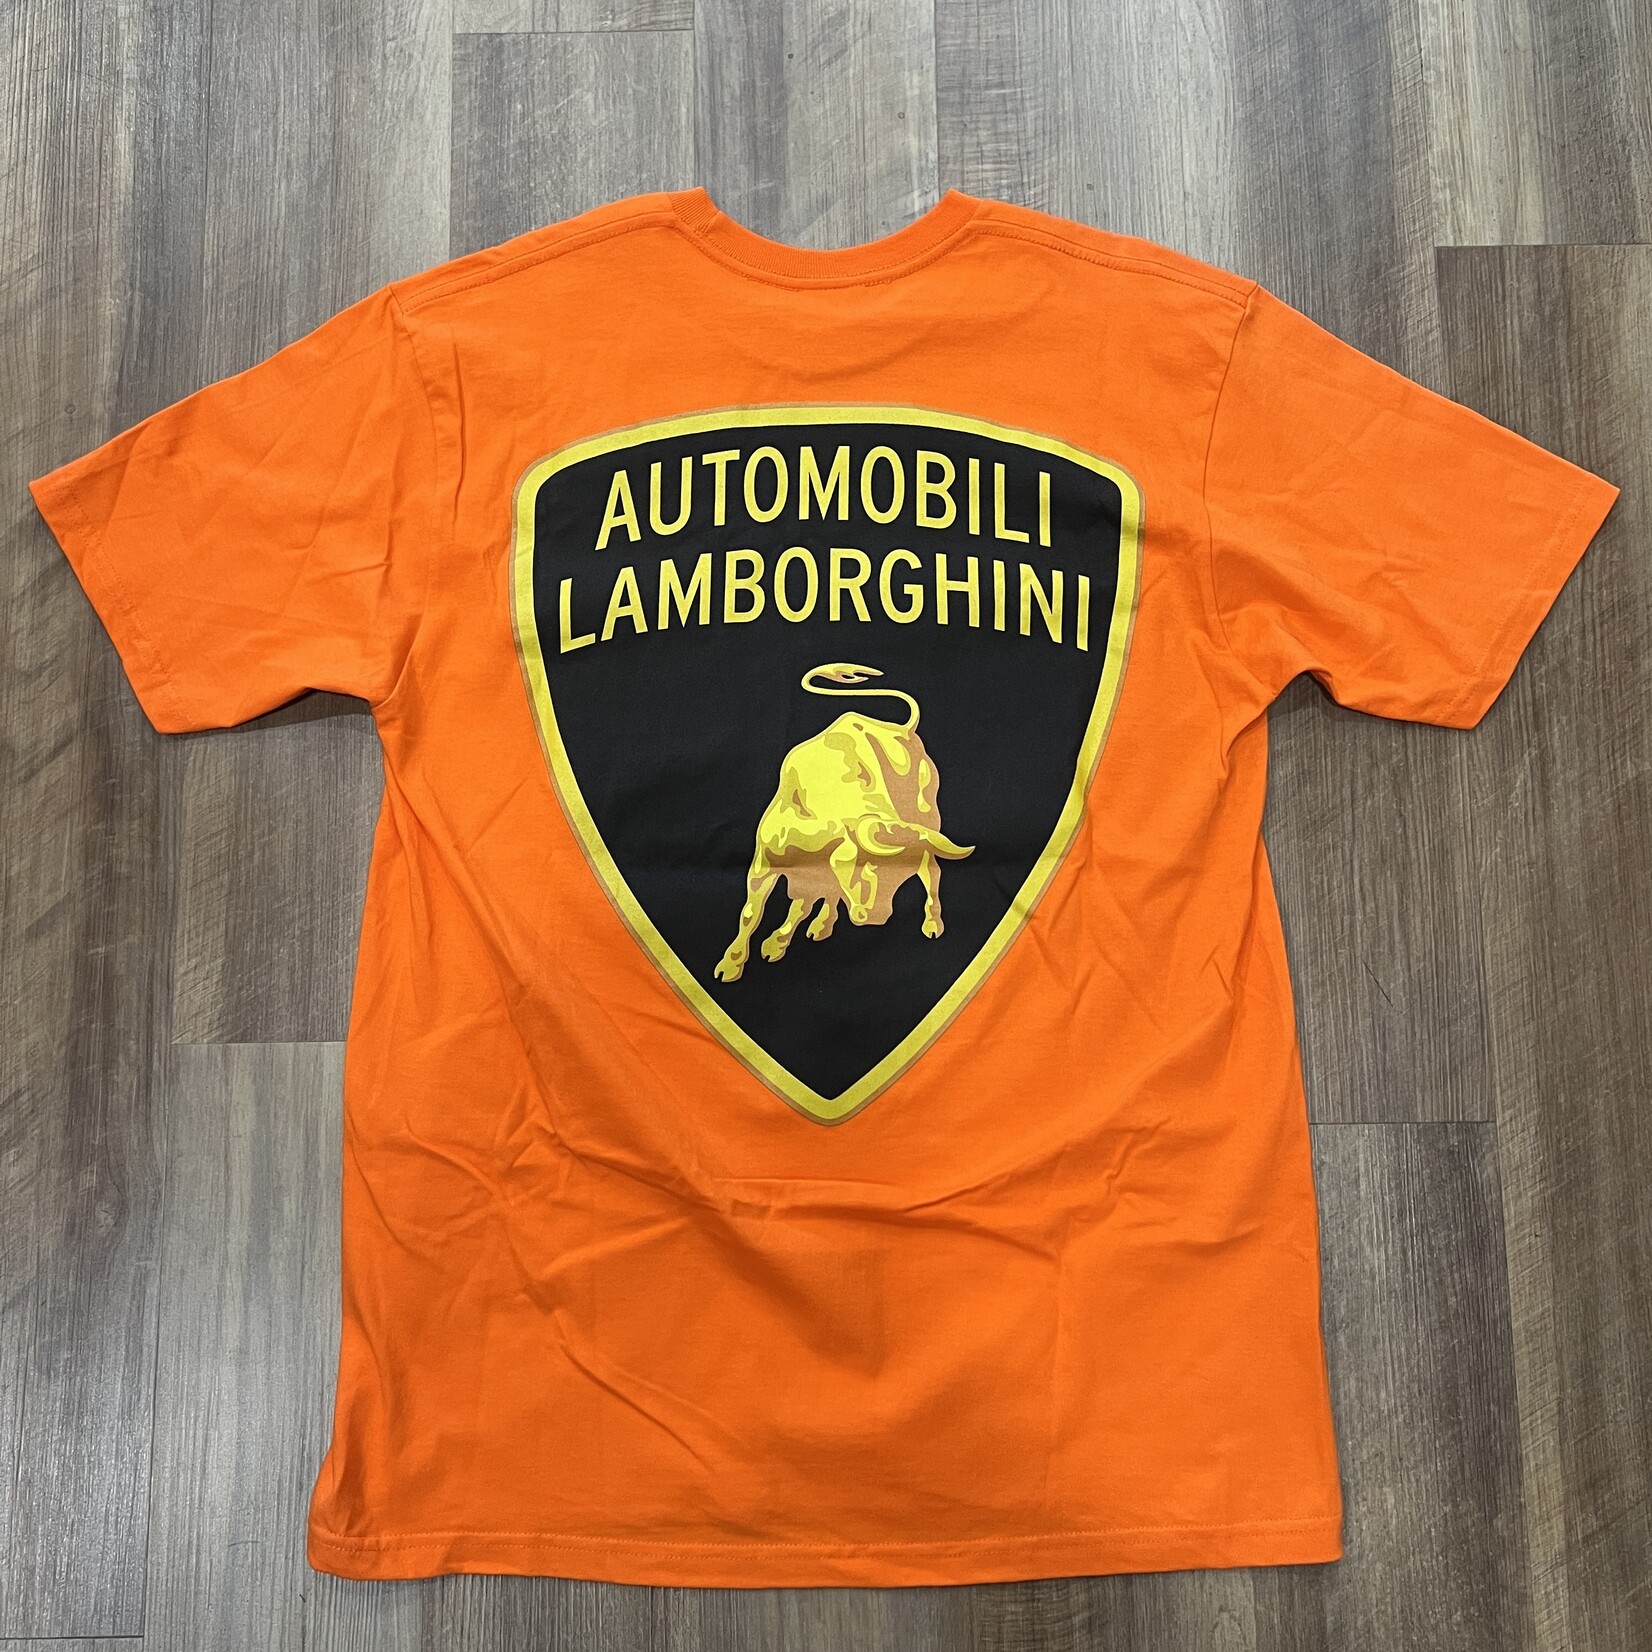 Supreme Supreme Automobili Lamborghini Tee Orange